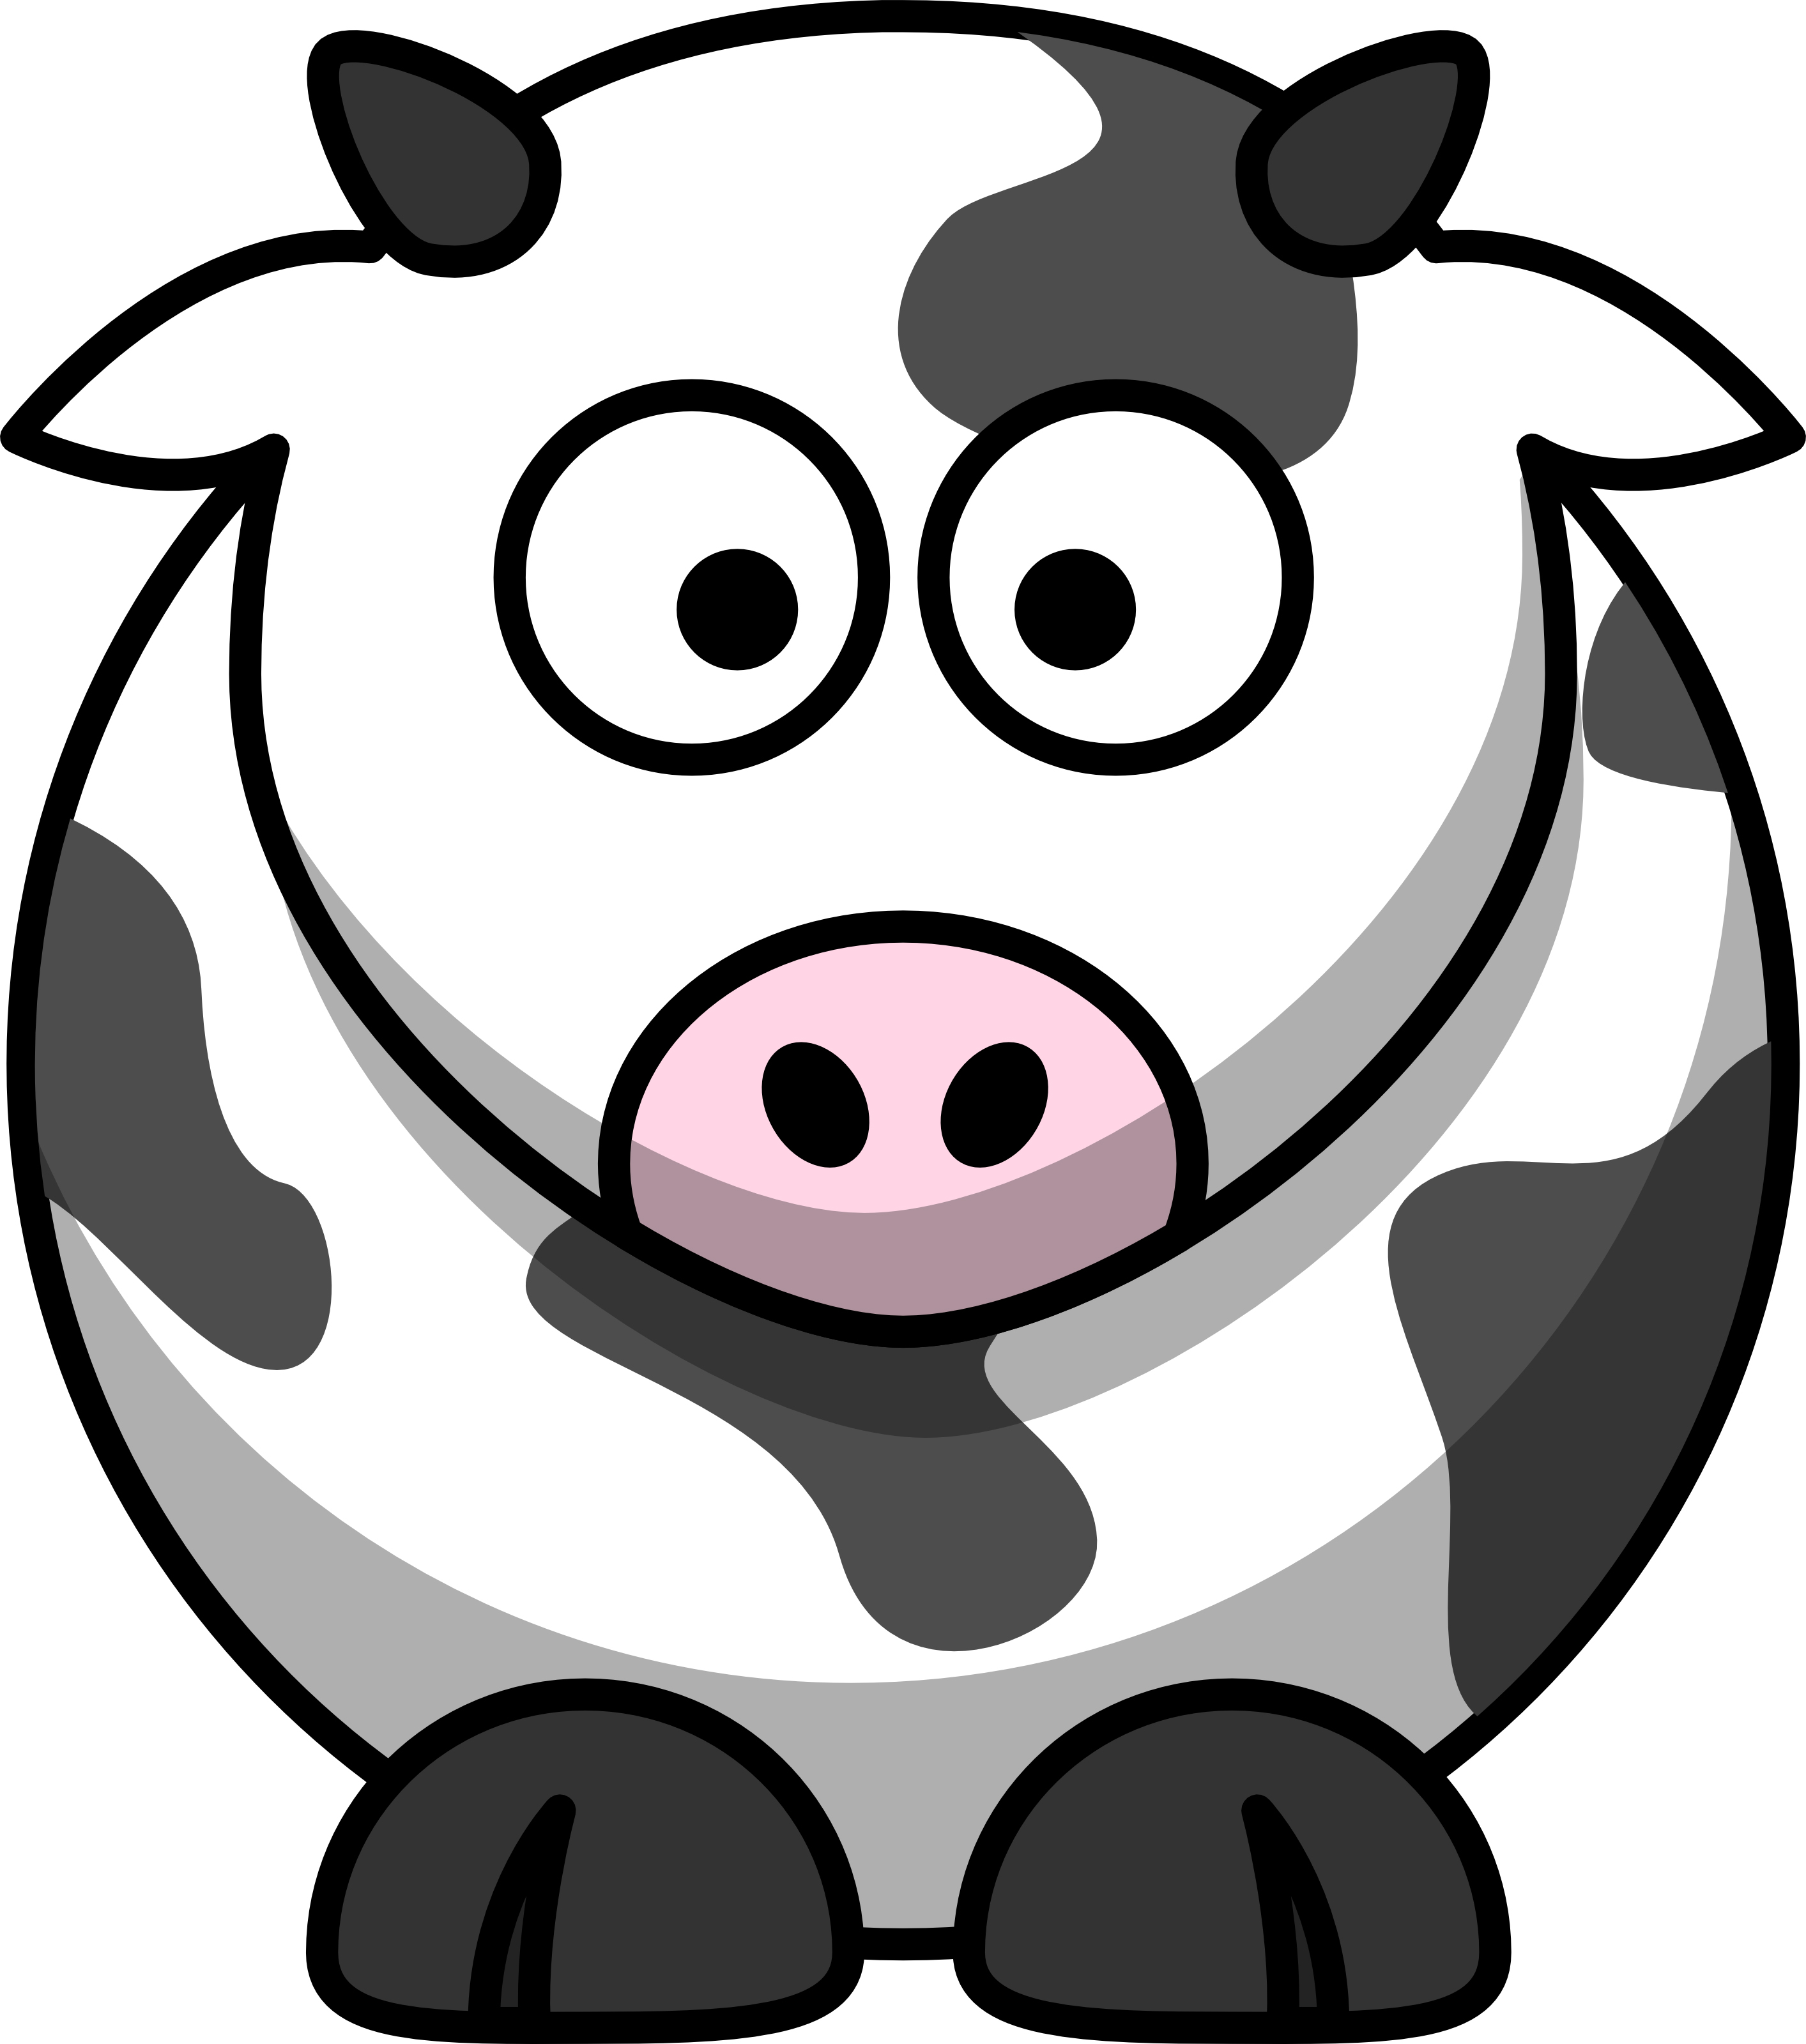 Free Cartoon Cow Clip Art   Free Images At Clker Com   Vector Clip Art